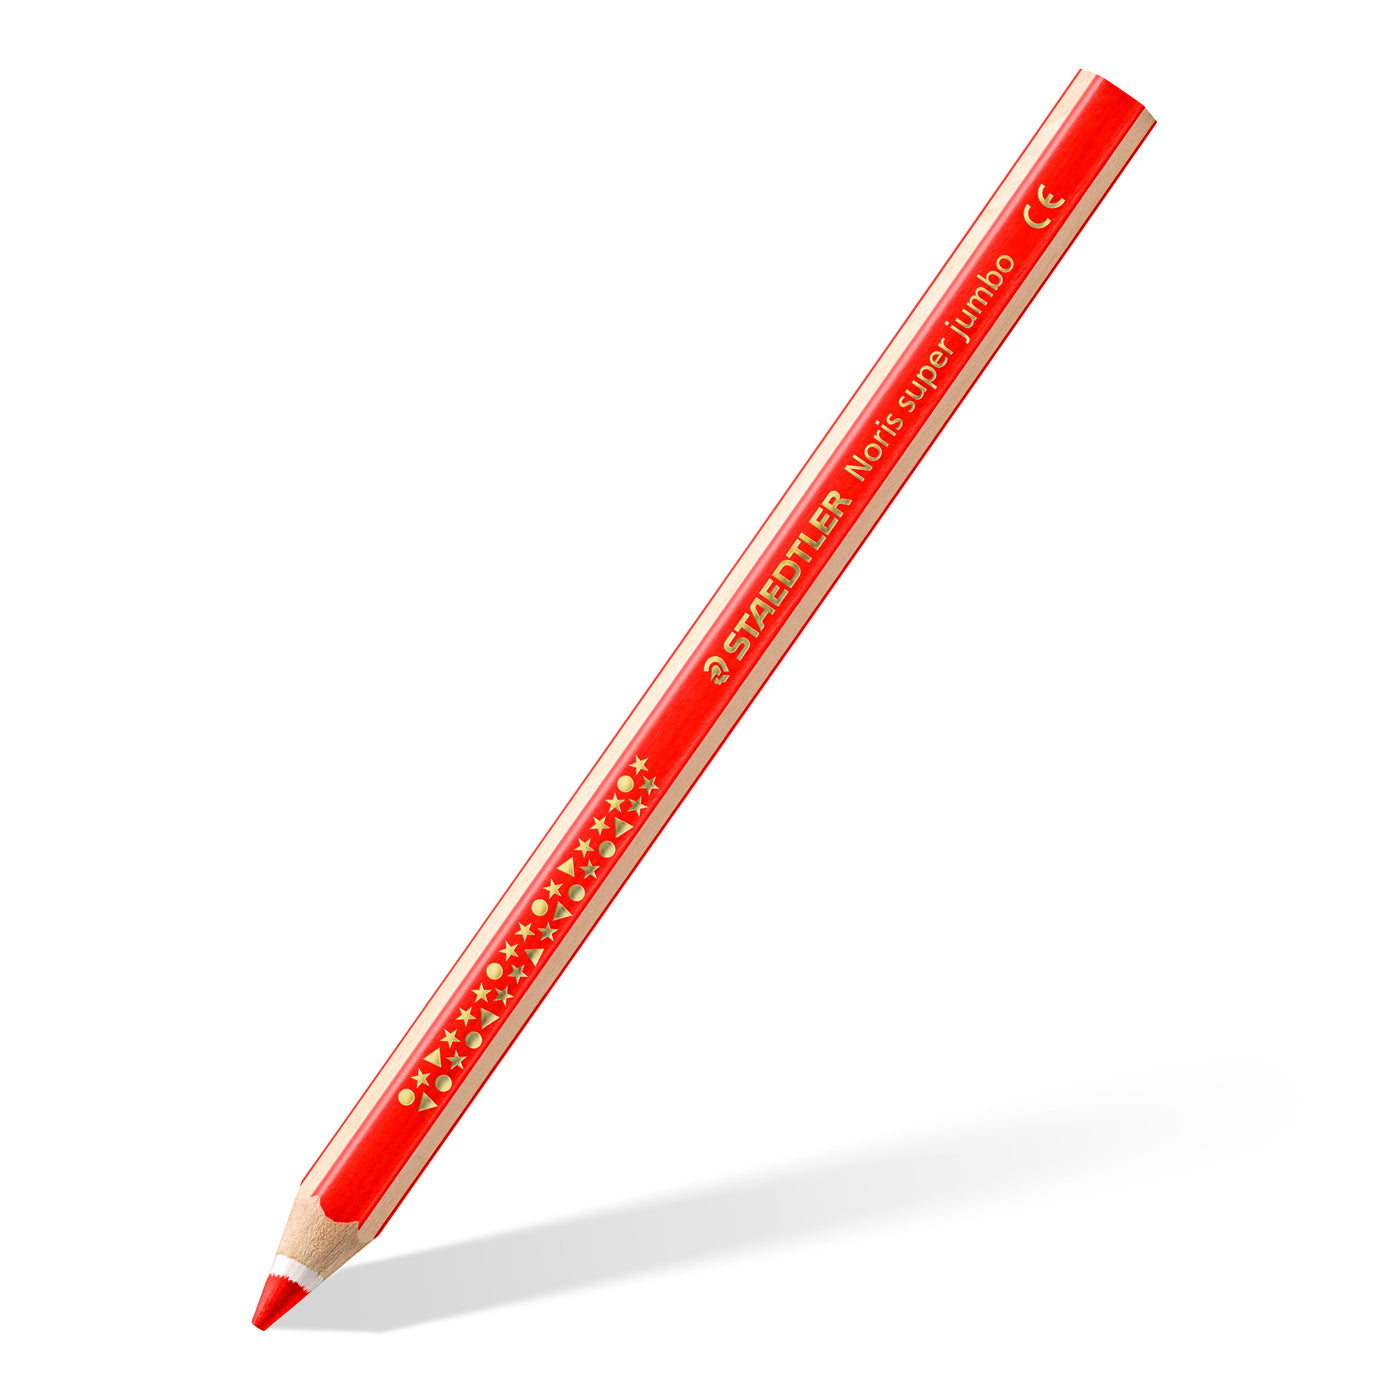 Staedtler Noris Super-Jumbo Coloured Pencils 129 Pack of 10